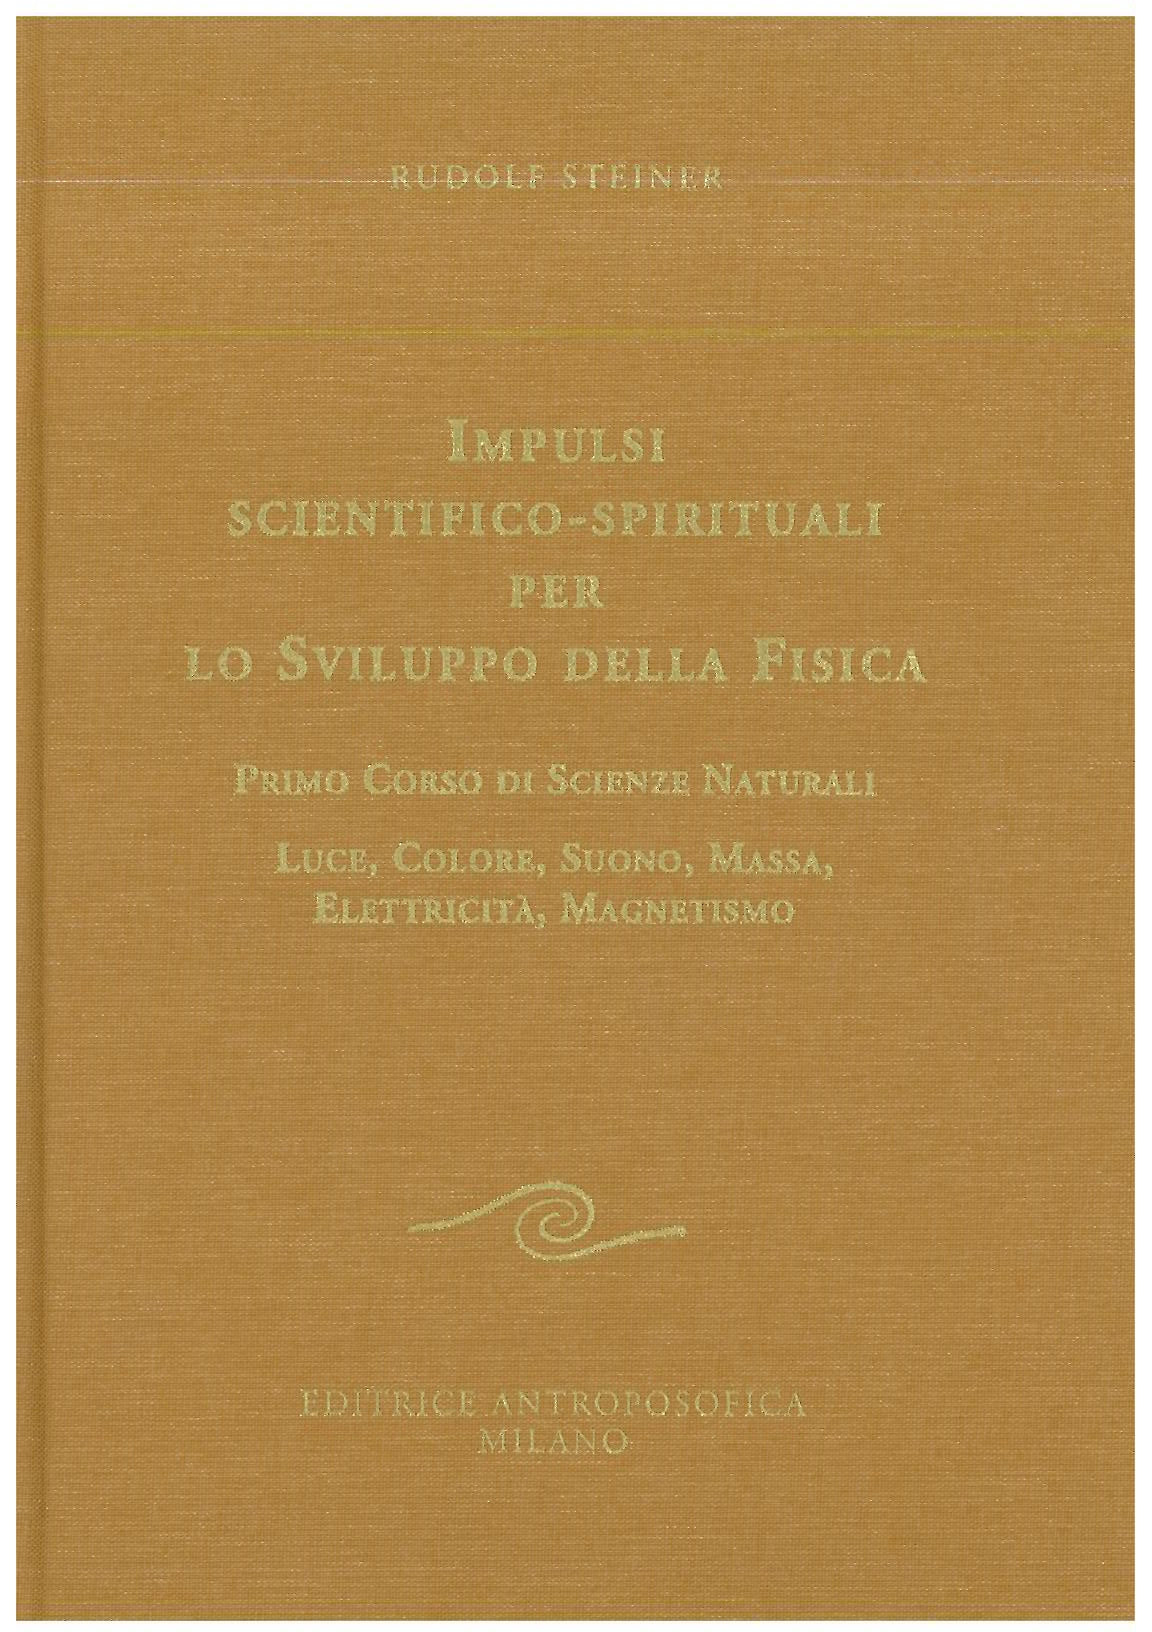 Impulsi scientifico-spirituali per il progresso della fisica vol. 1- Rudolf Steiner